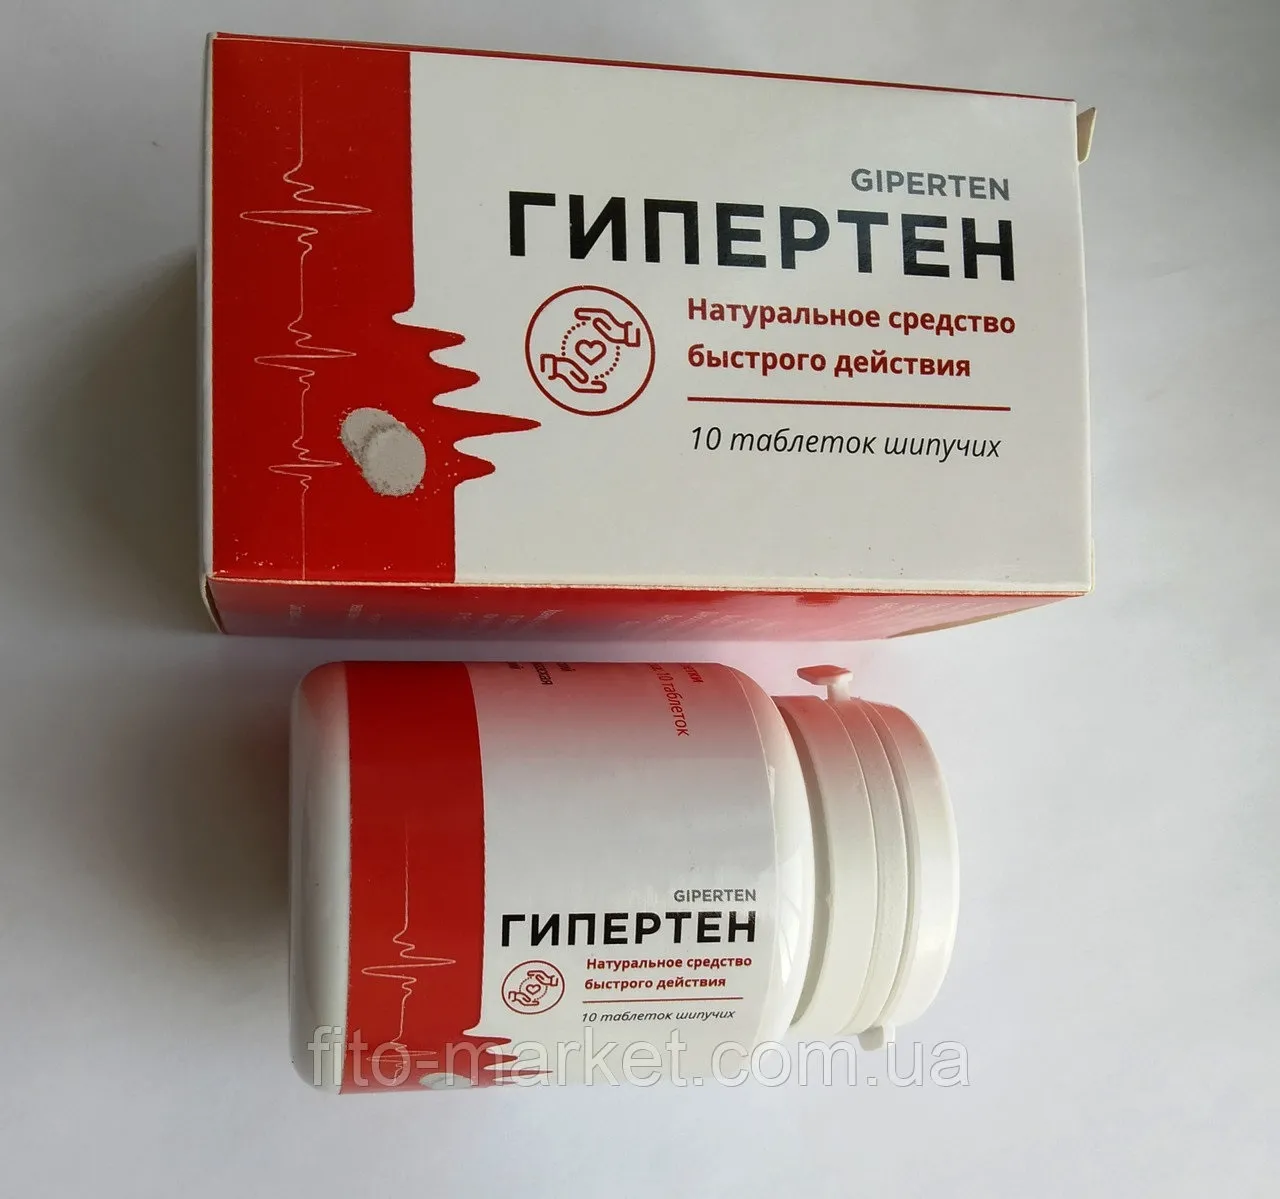 Hyper drops : къде да купя в България, в аптека?